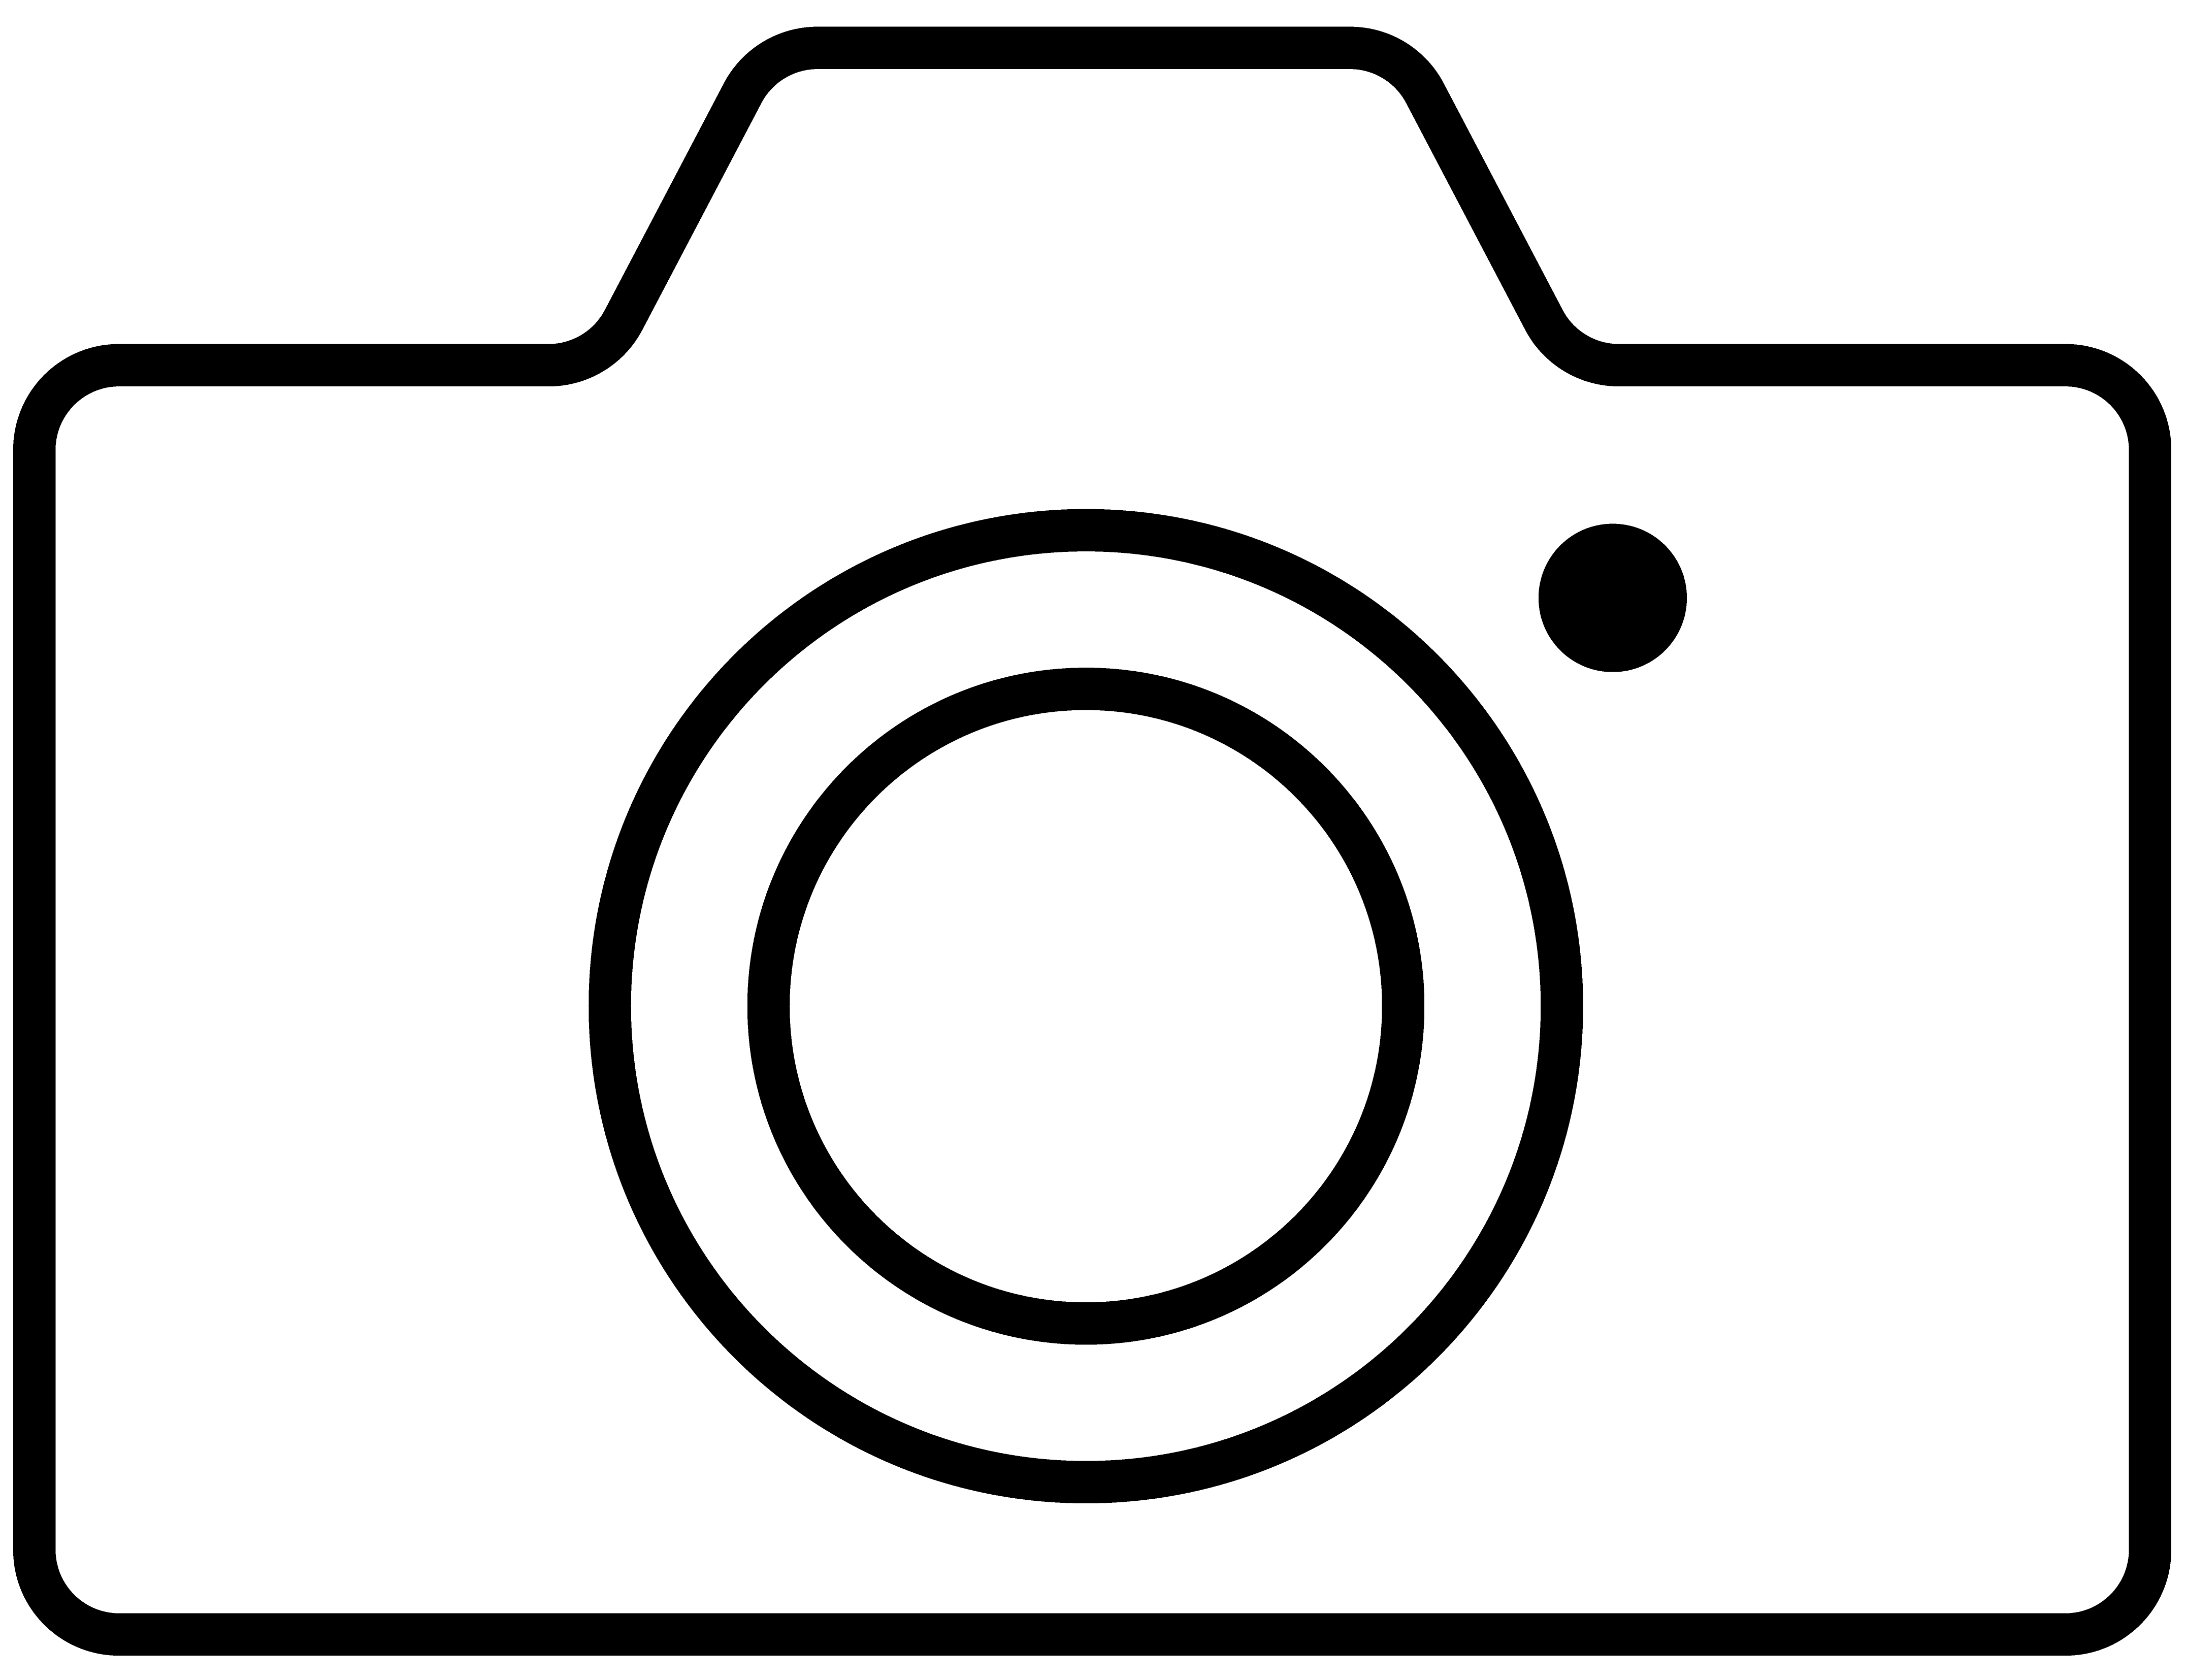 icon_camera